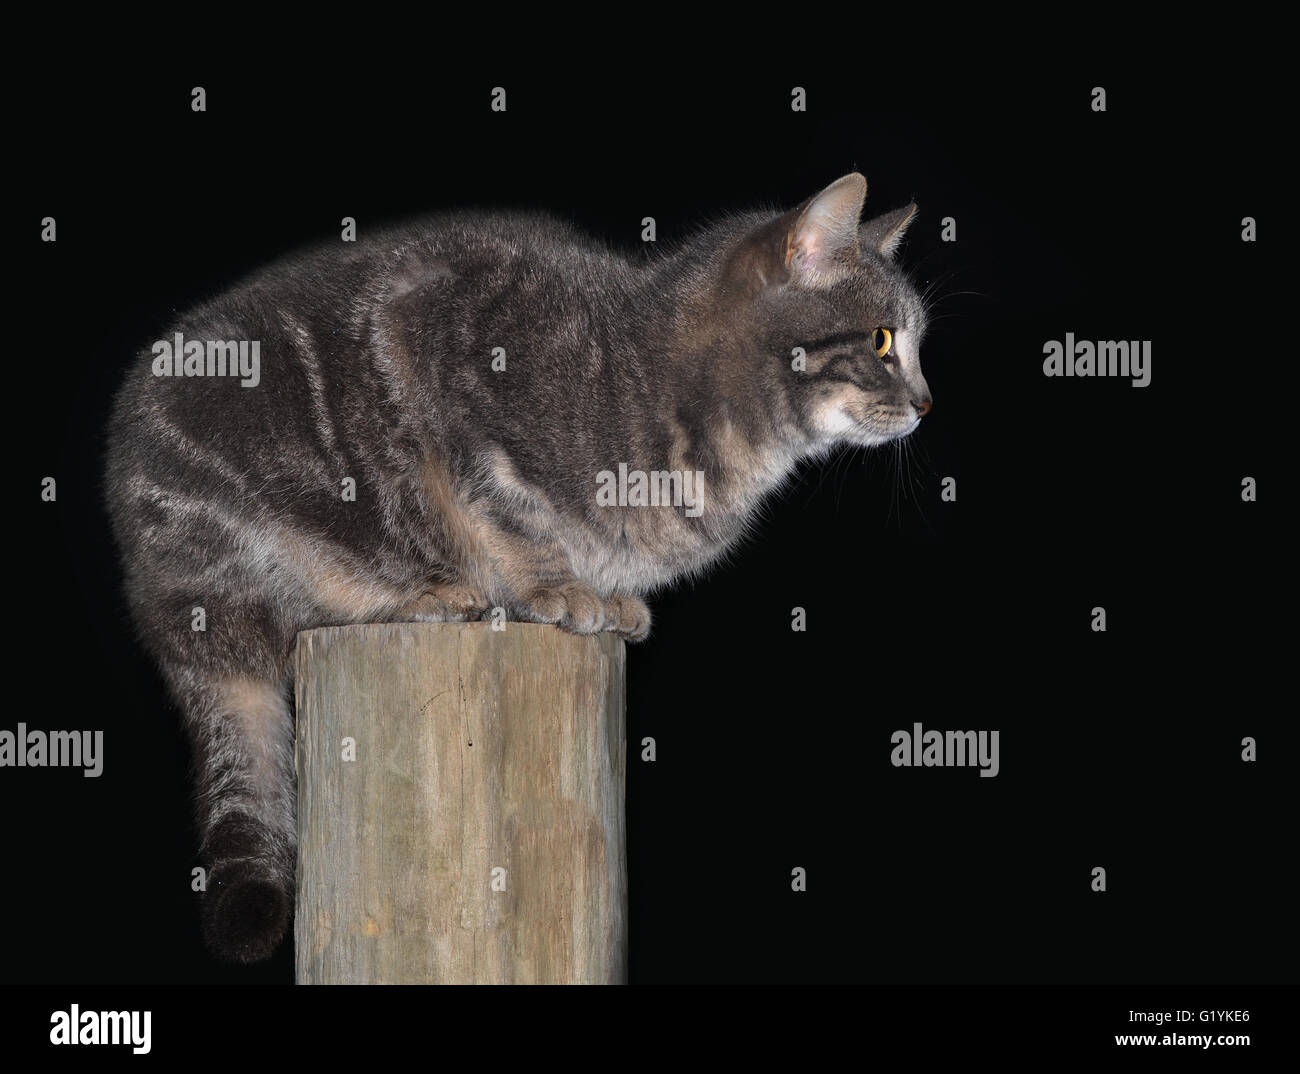 Gato atigrado azul en la parte superior de una valla de madera post contra el fondo oscuro Foto de stock